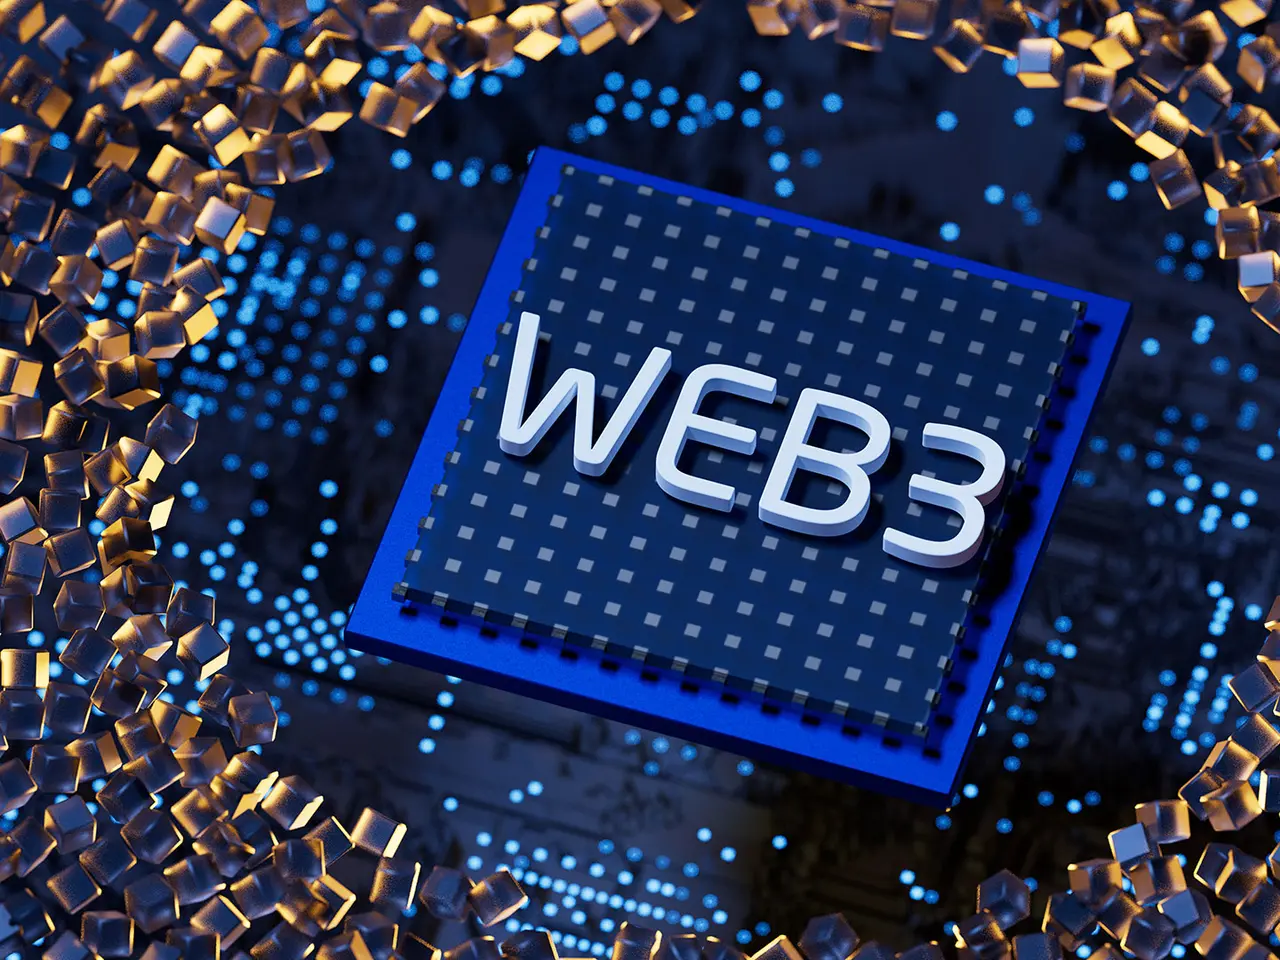 这是一张描绘Web3字样的三维处理器芯片的图片，芯片周围散布着金色的六边形元素，象征技术和创新。